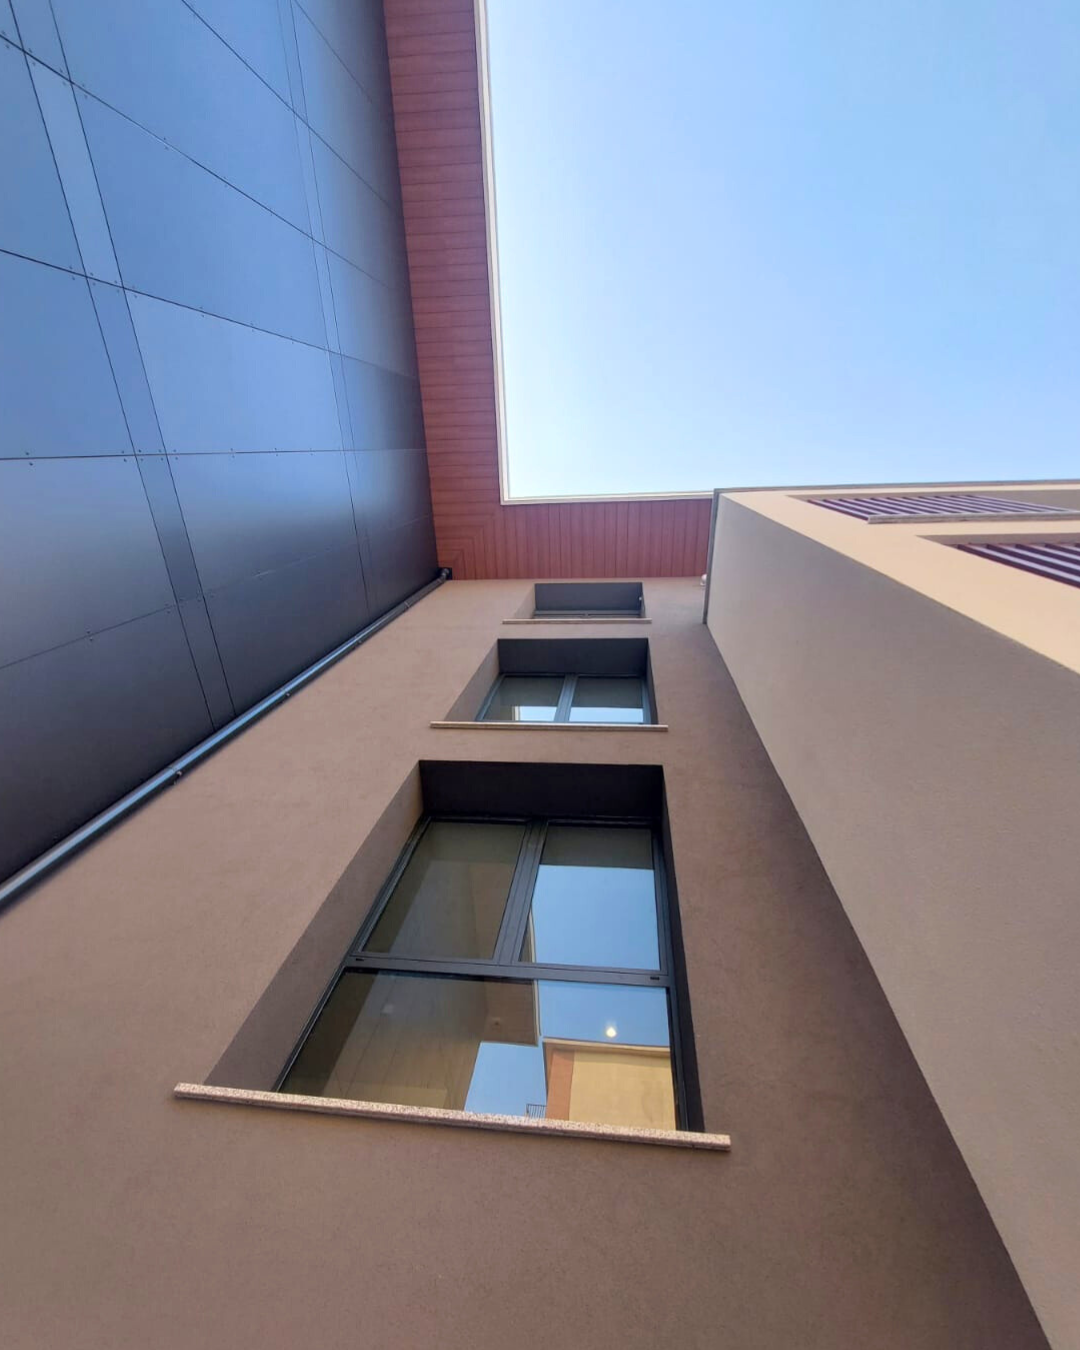 EXTRALUSSO model windows for a residential complex in Cernusco sul Naviglio